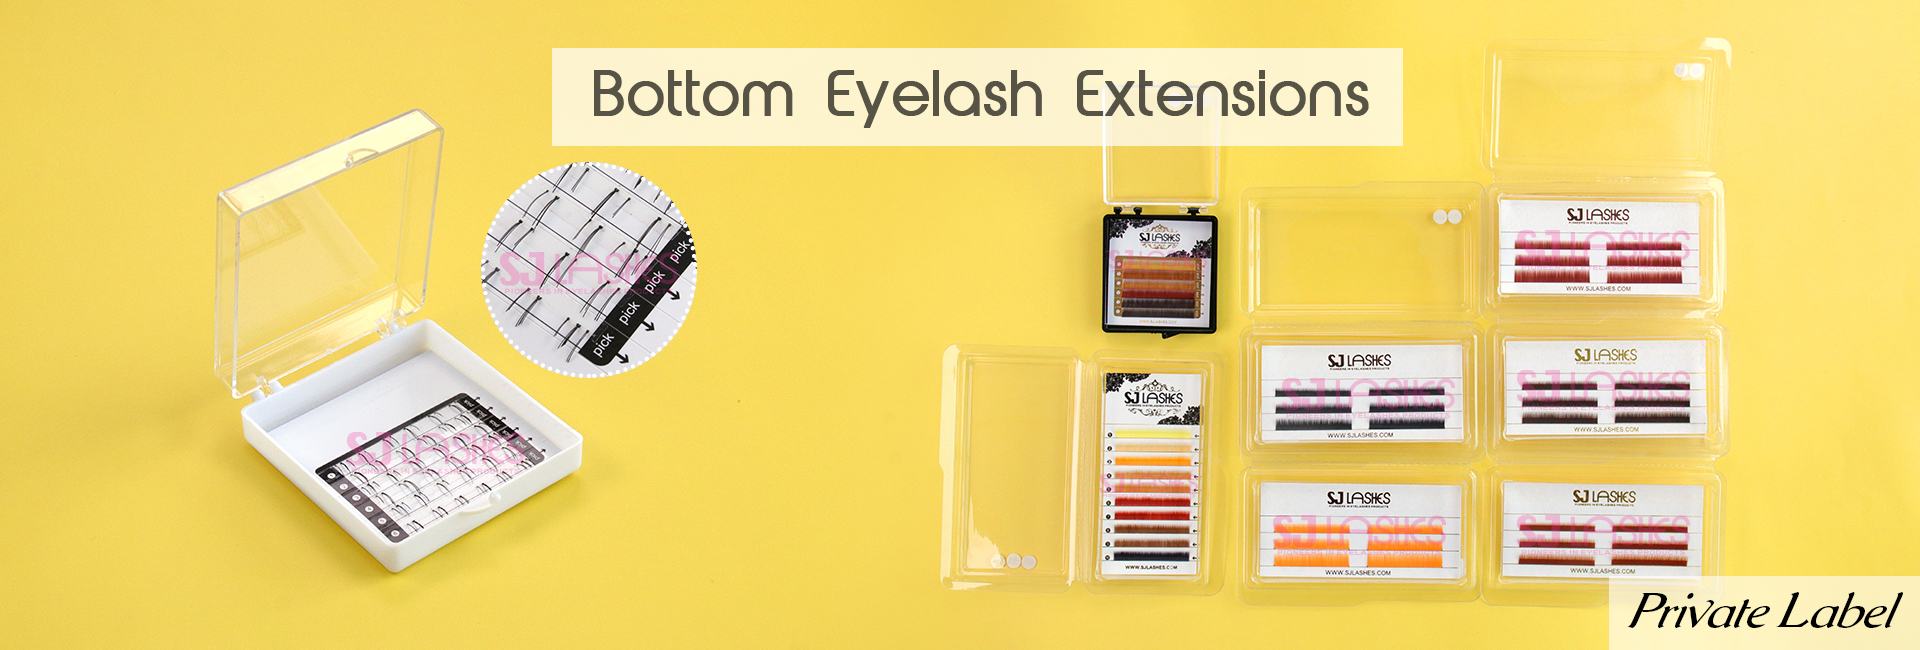 Bottom Eyelash Extensions